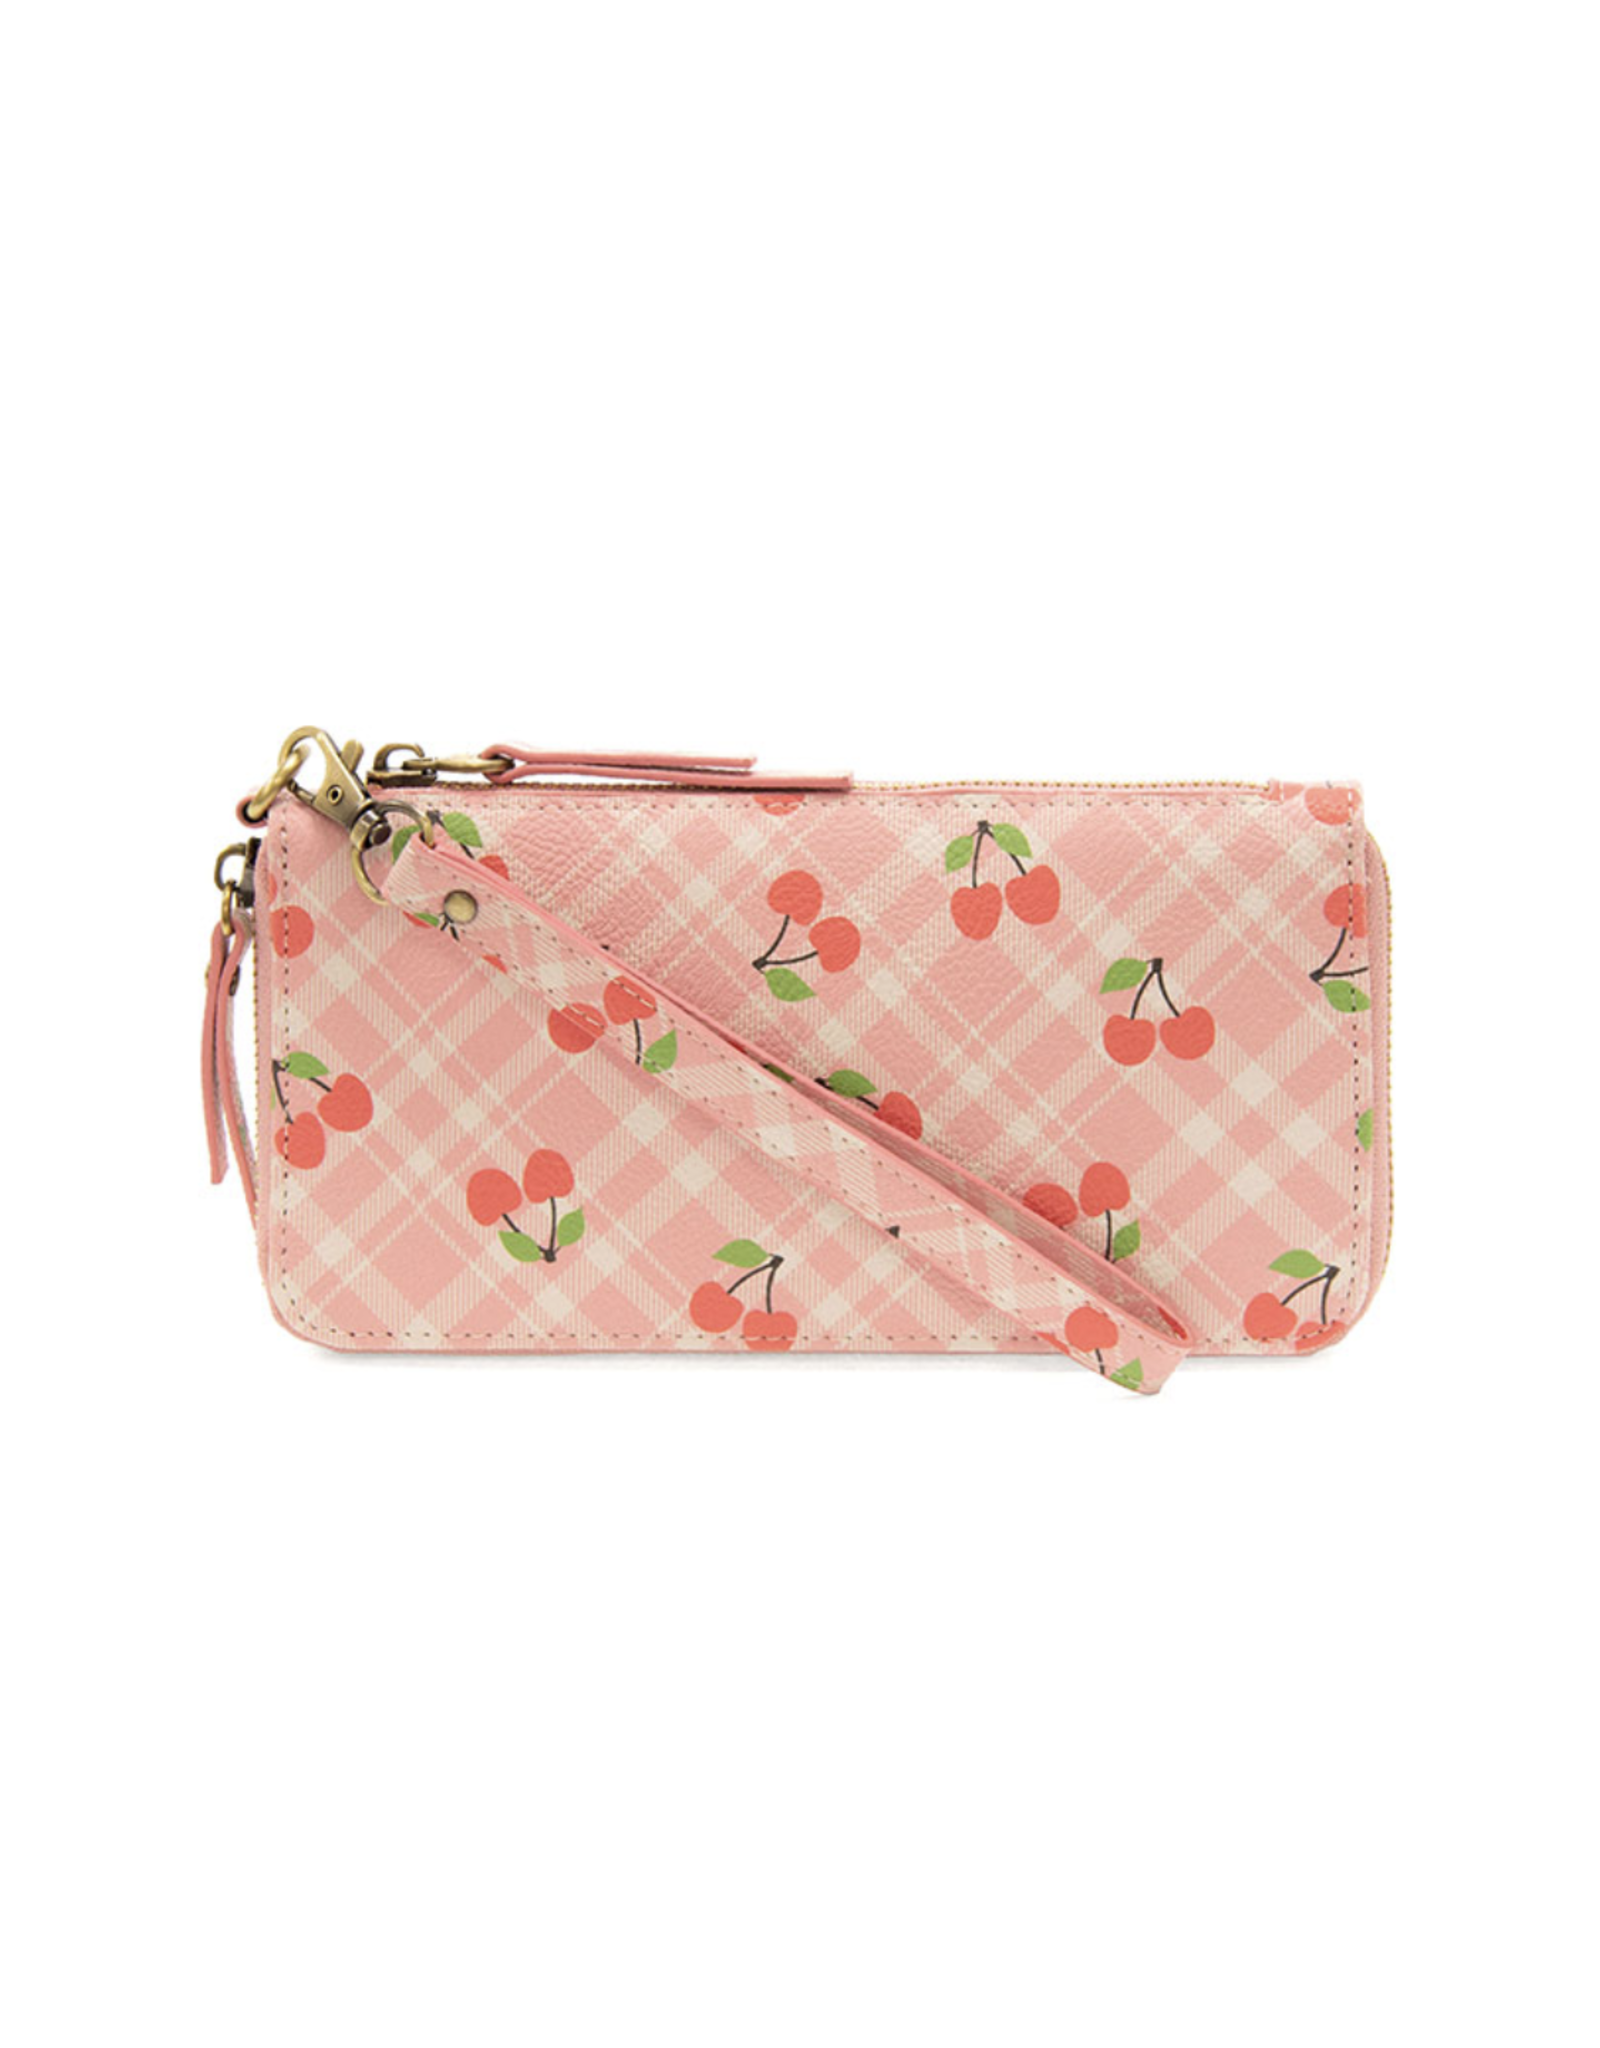 Chloe Zip Around Wallet - Cherries on Pink Plaid